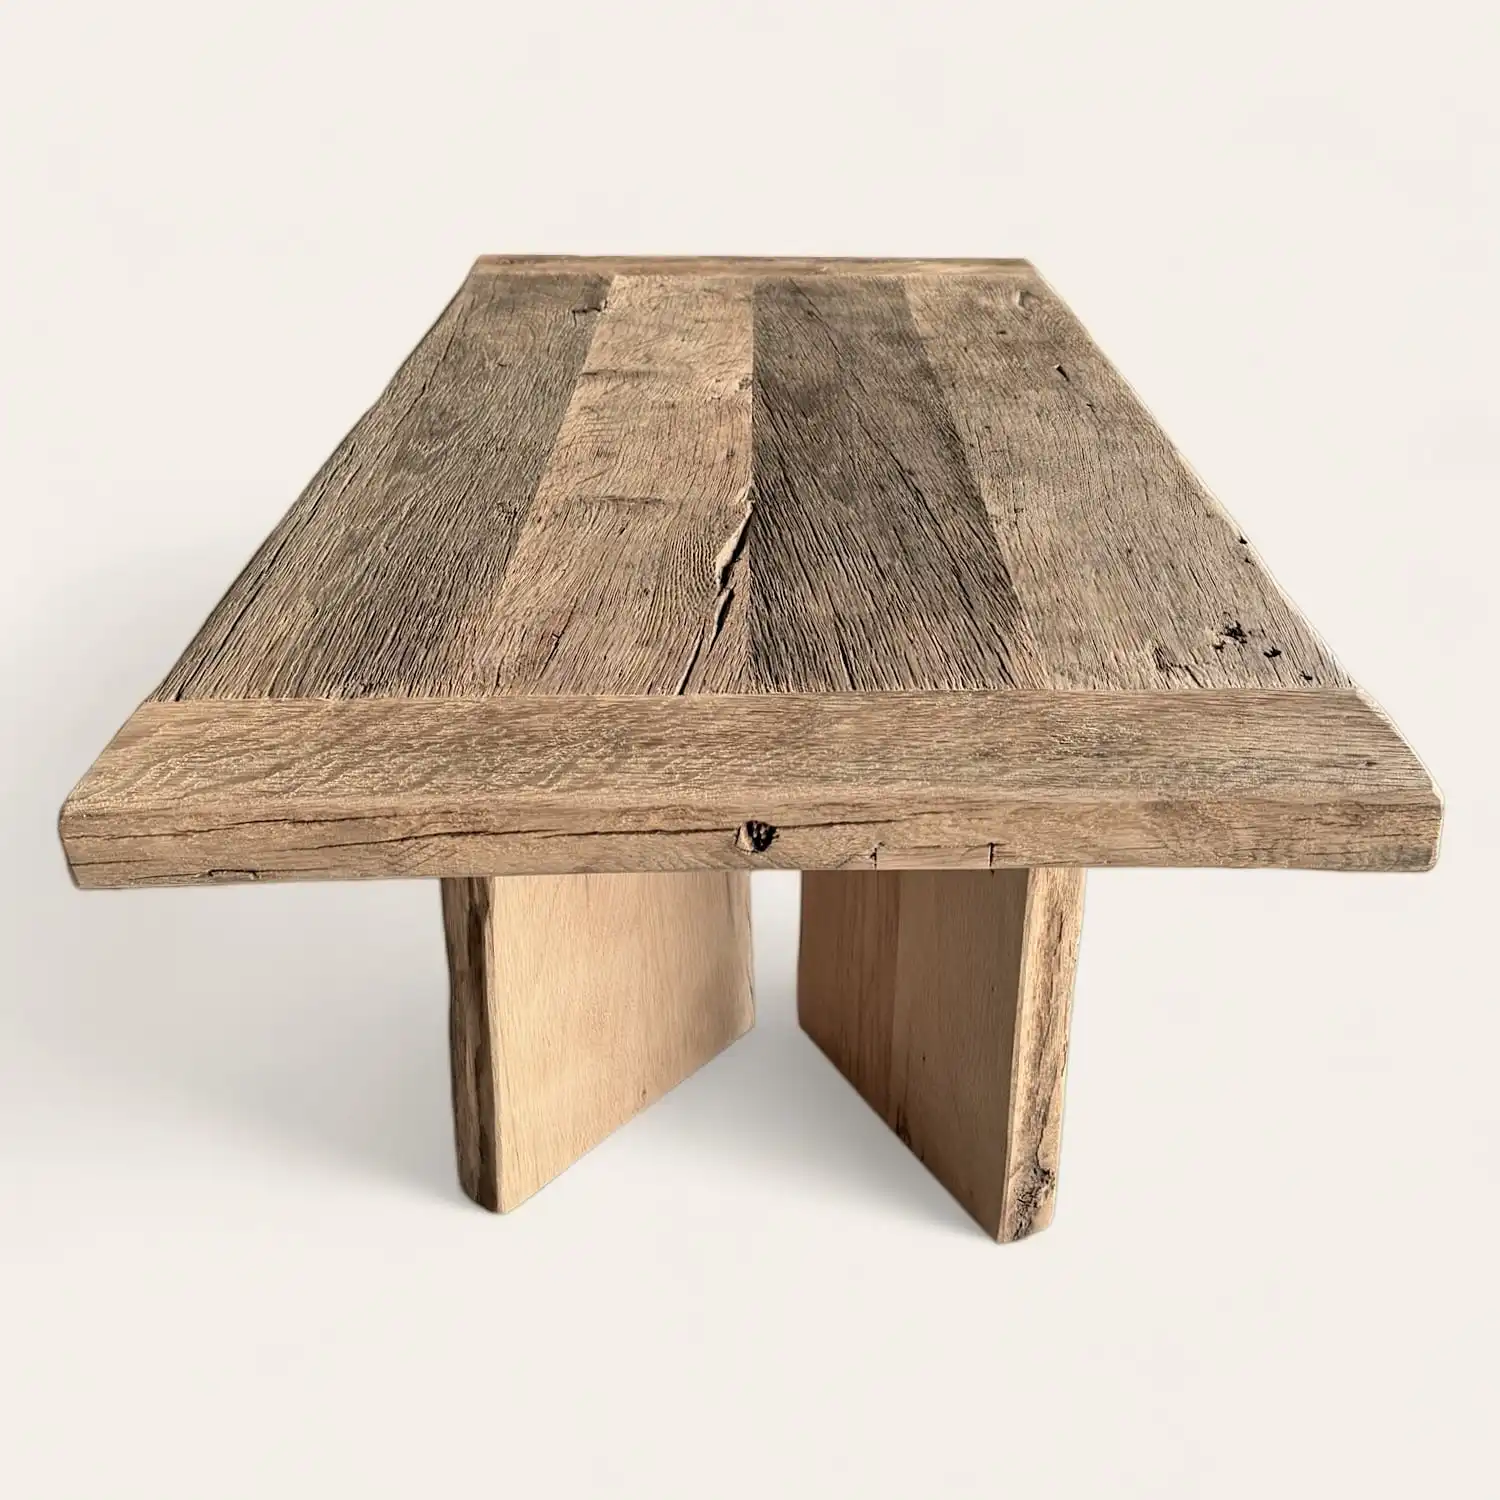  Table à manger rustique en bois récupéré. 